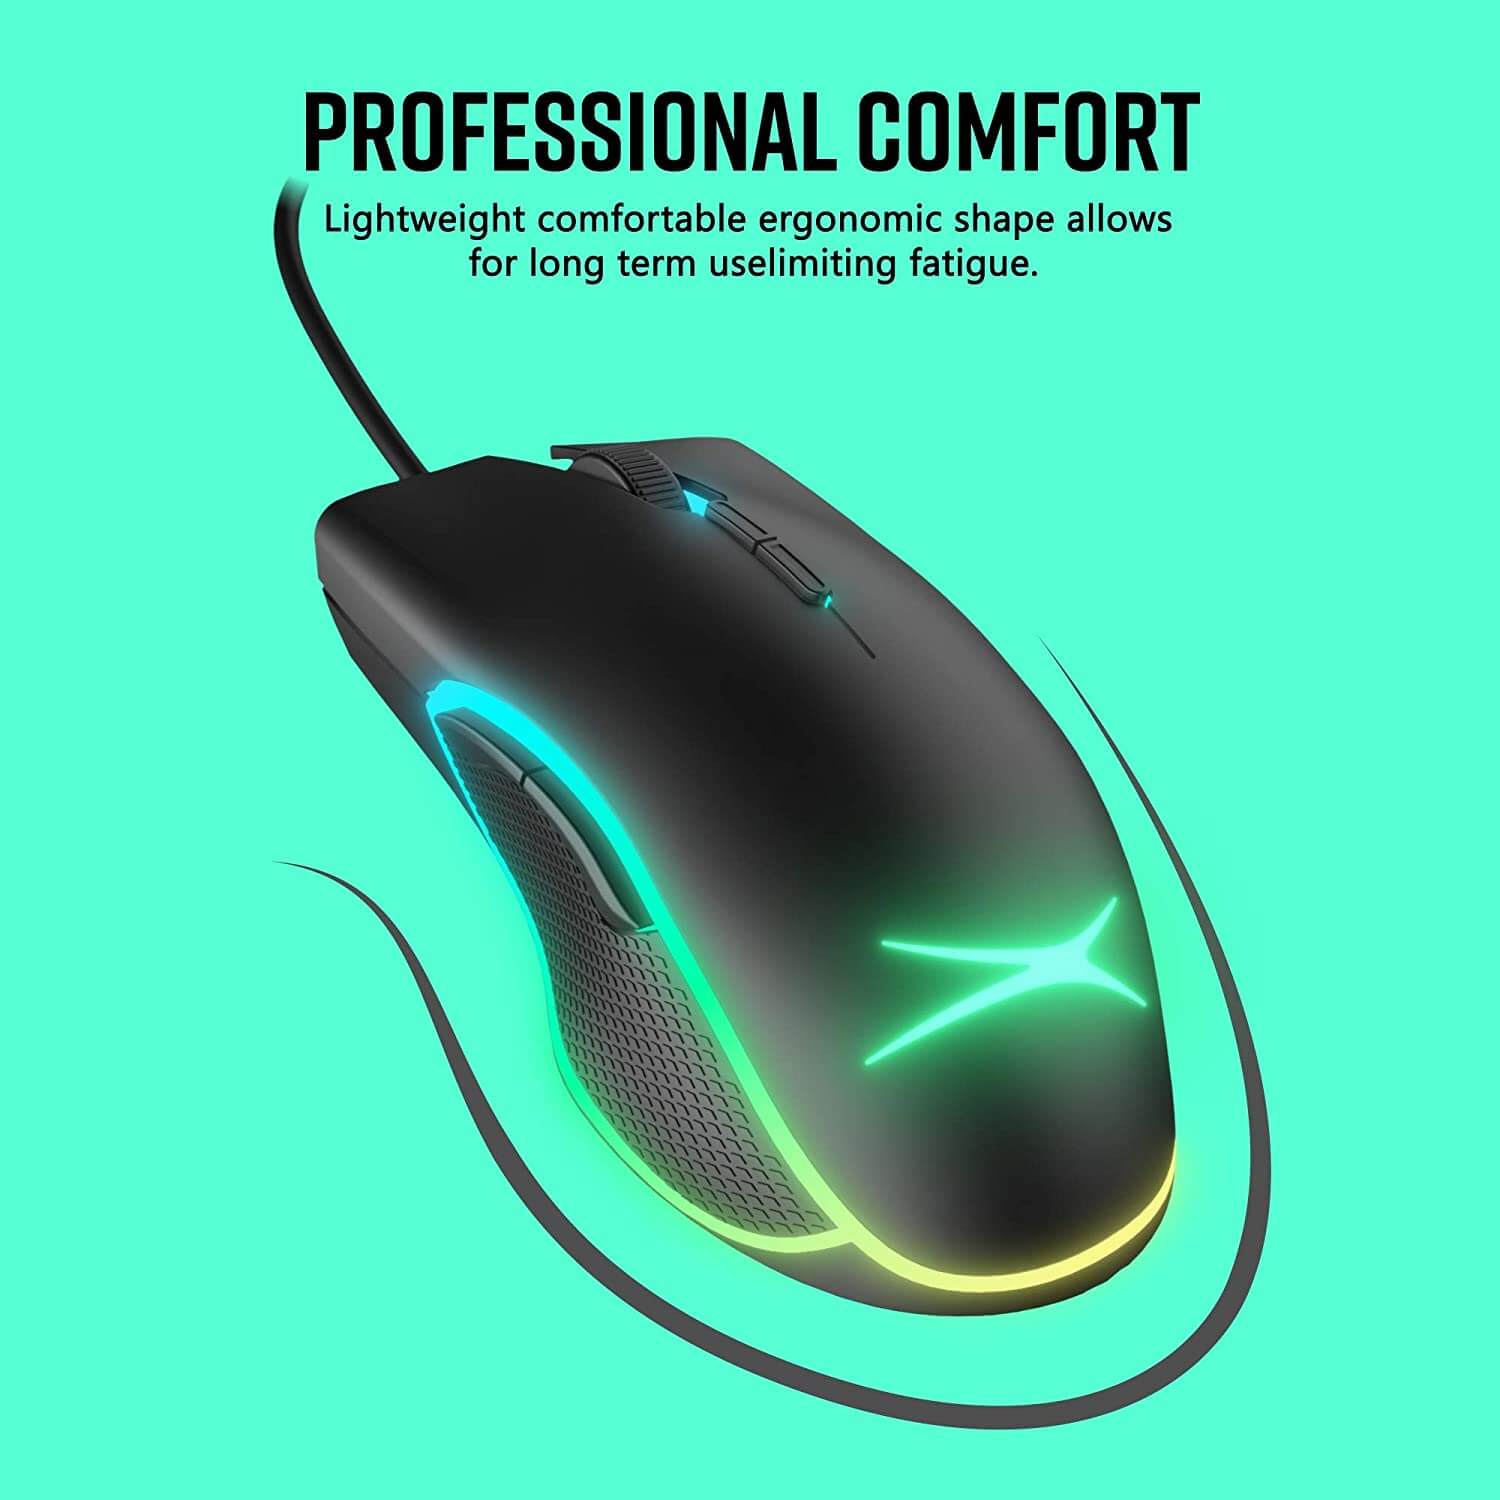 Altec Lansing Ergonomic RGB Wired Gaming Mouse - Smart Tech Shopping